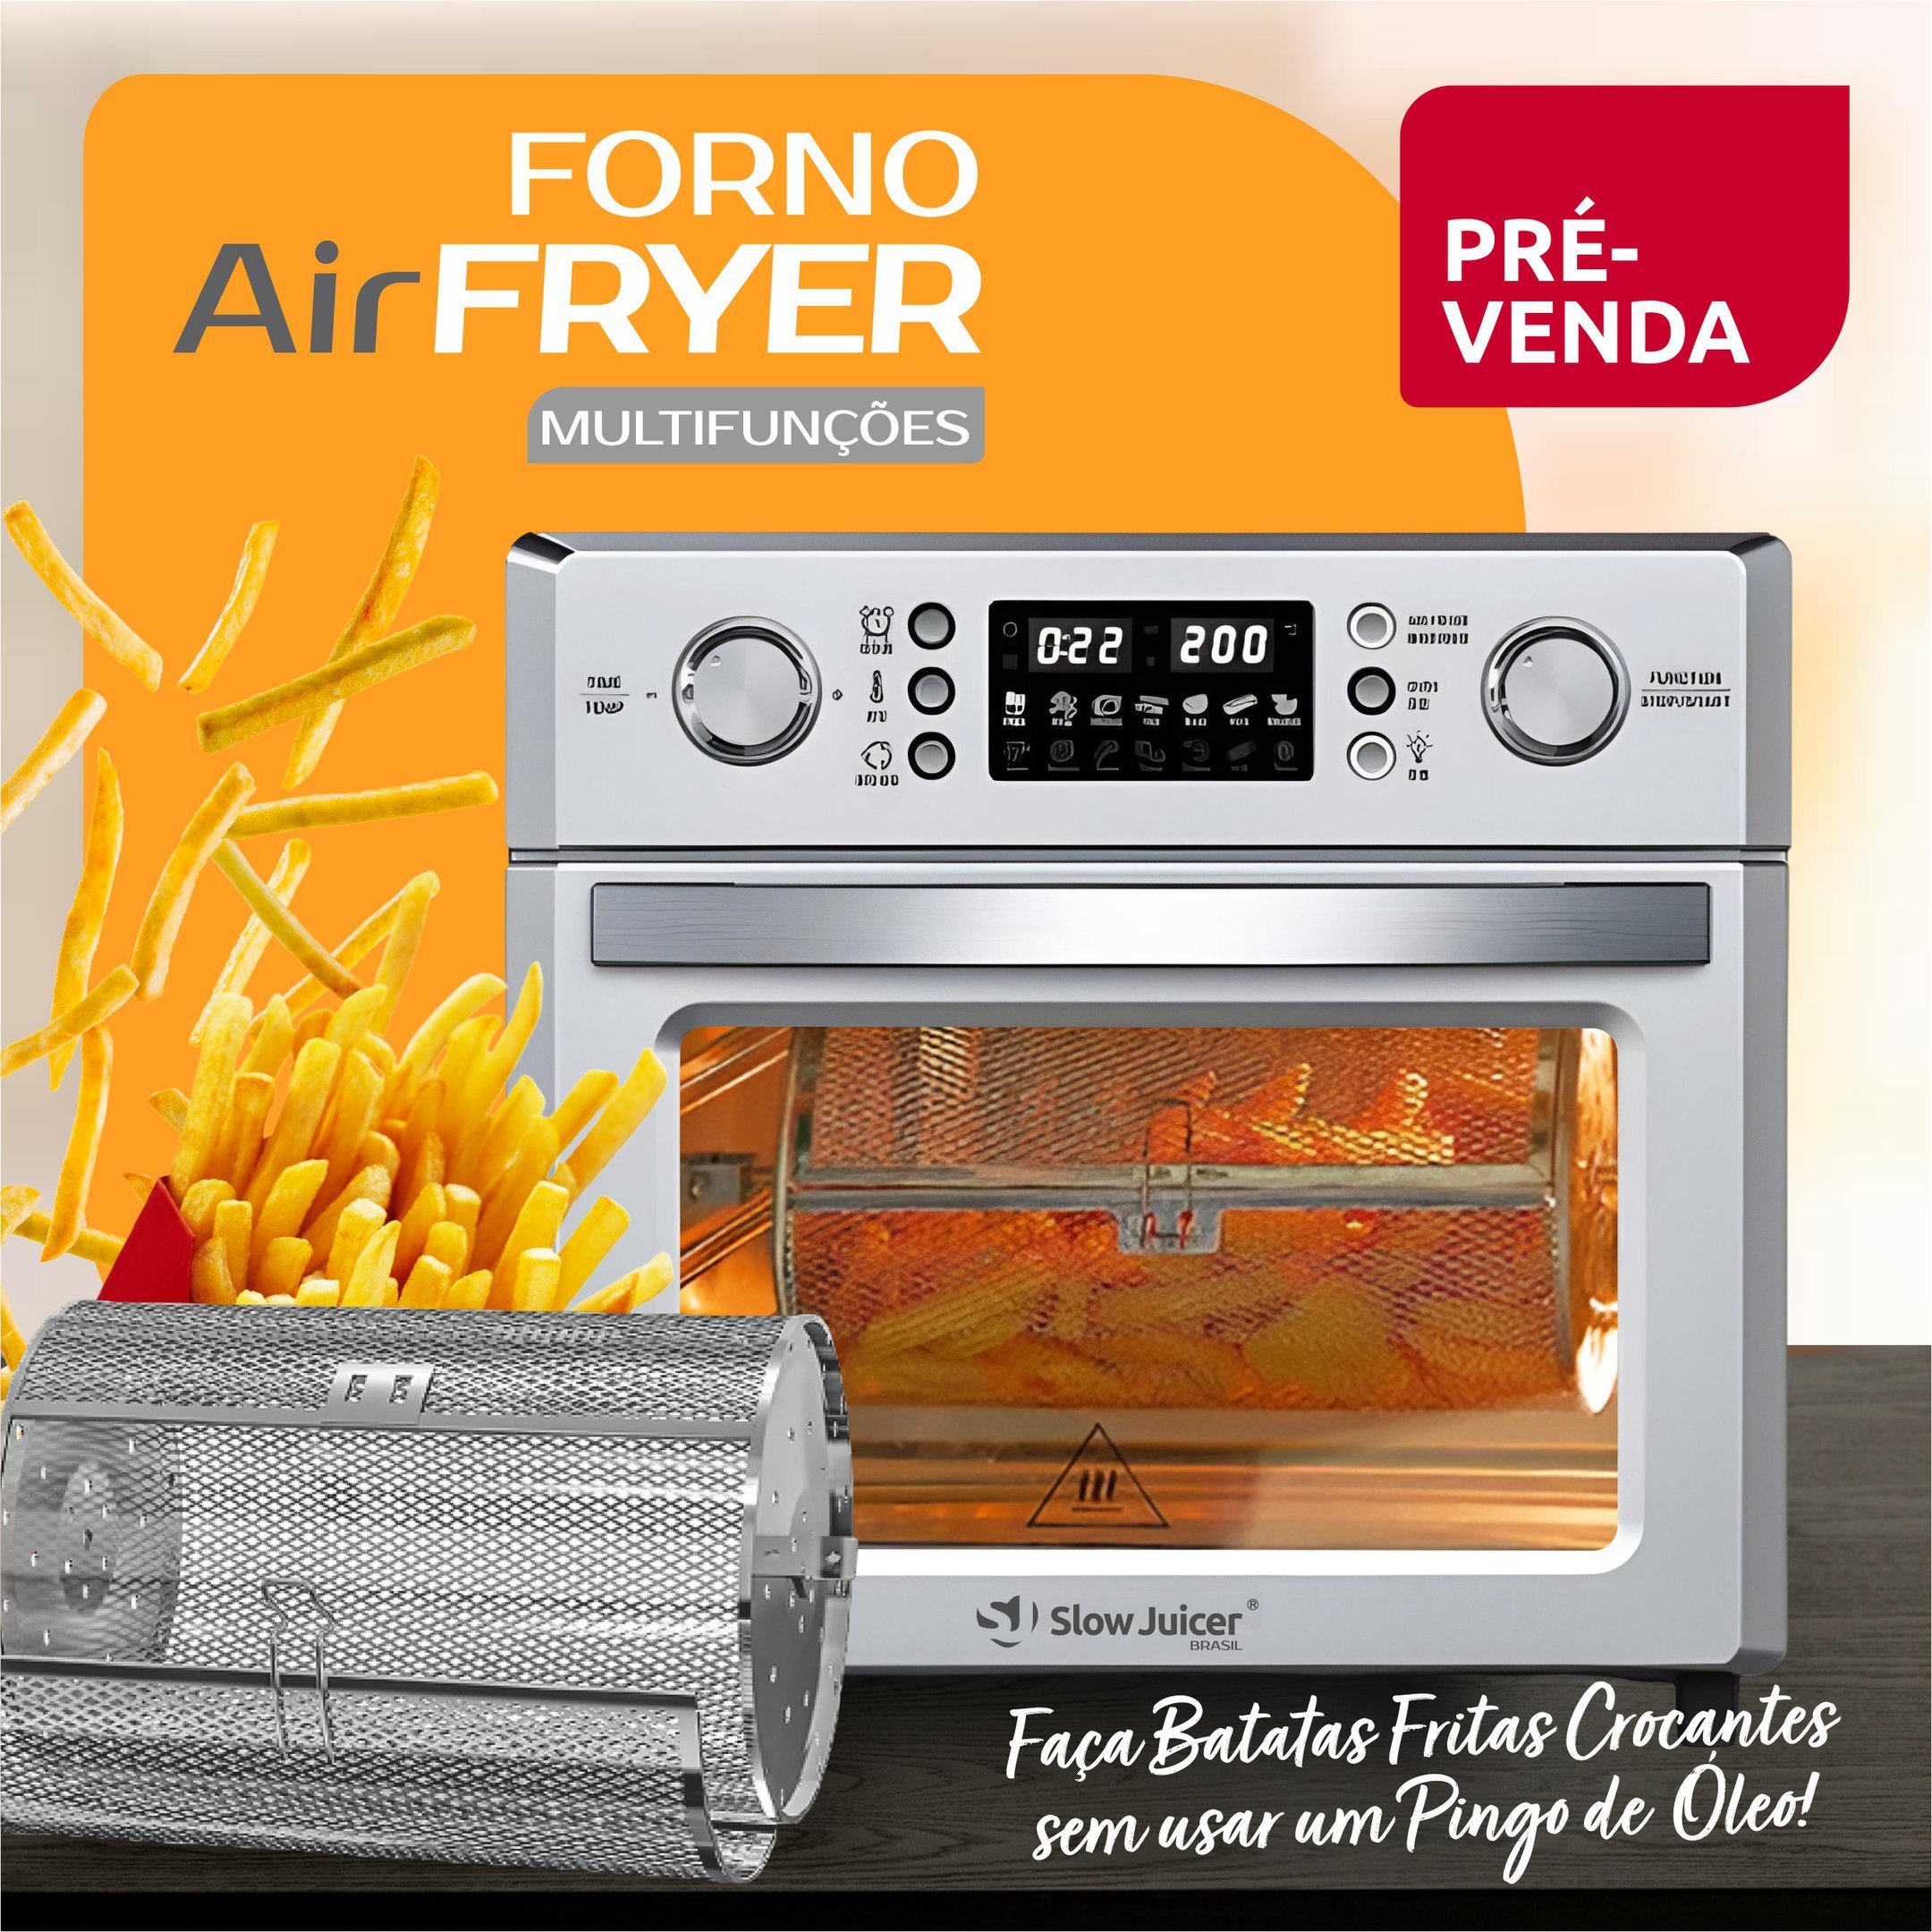 Forno Air Fryer c/ Espeto para Churrasco - 220v - 6